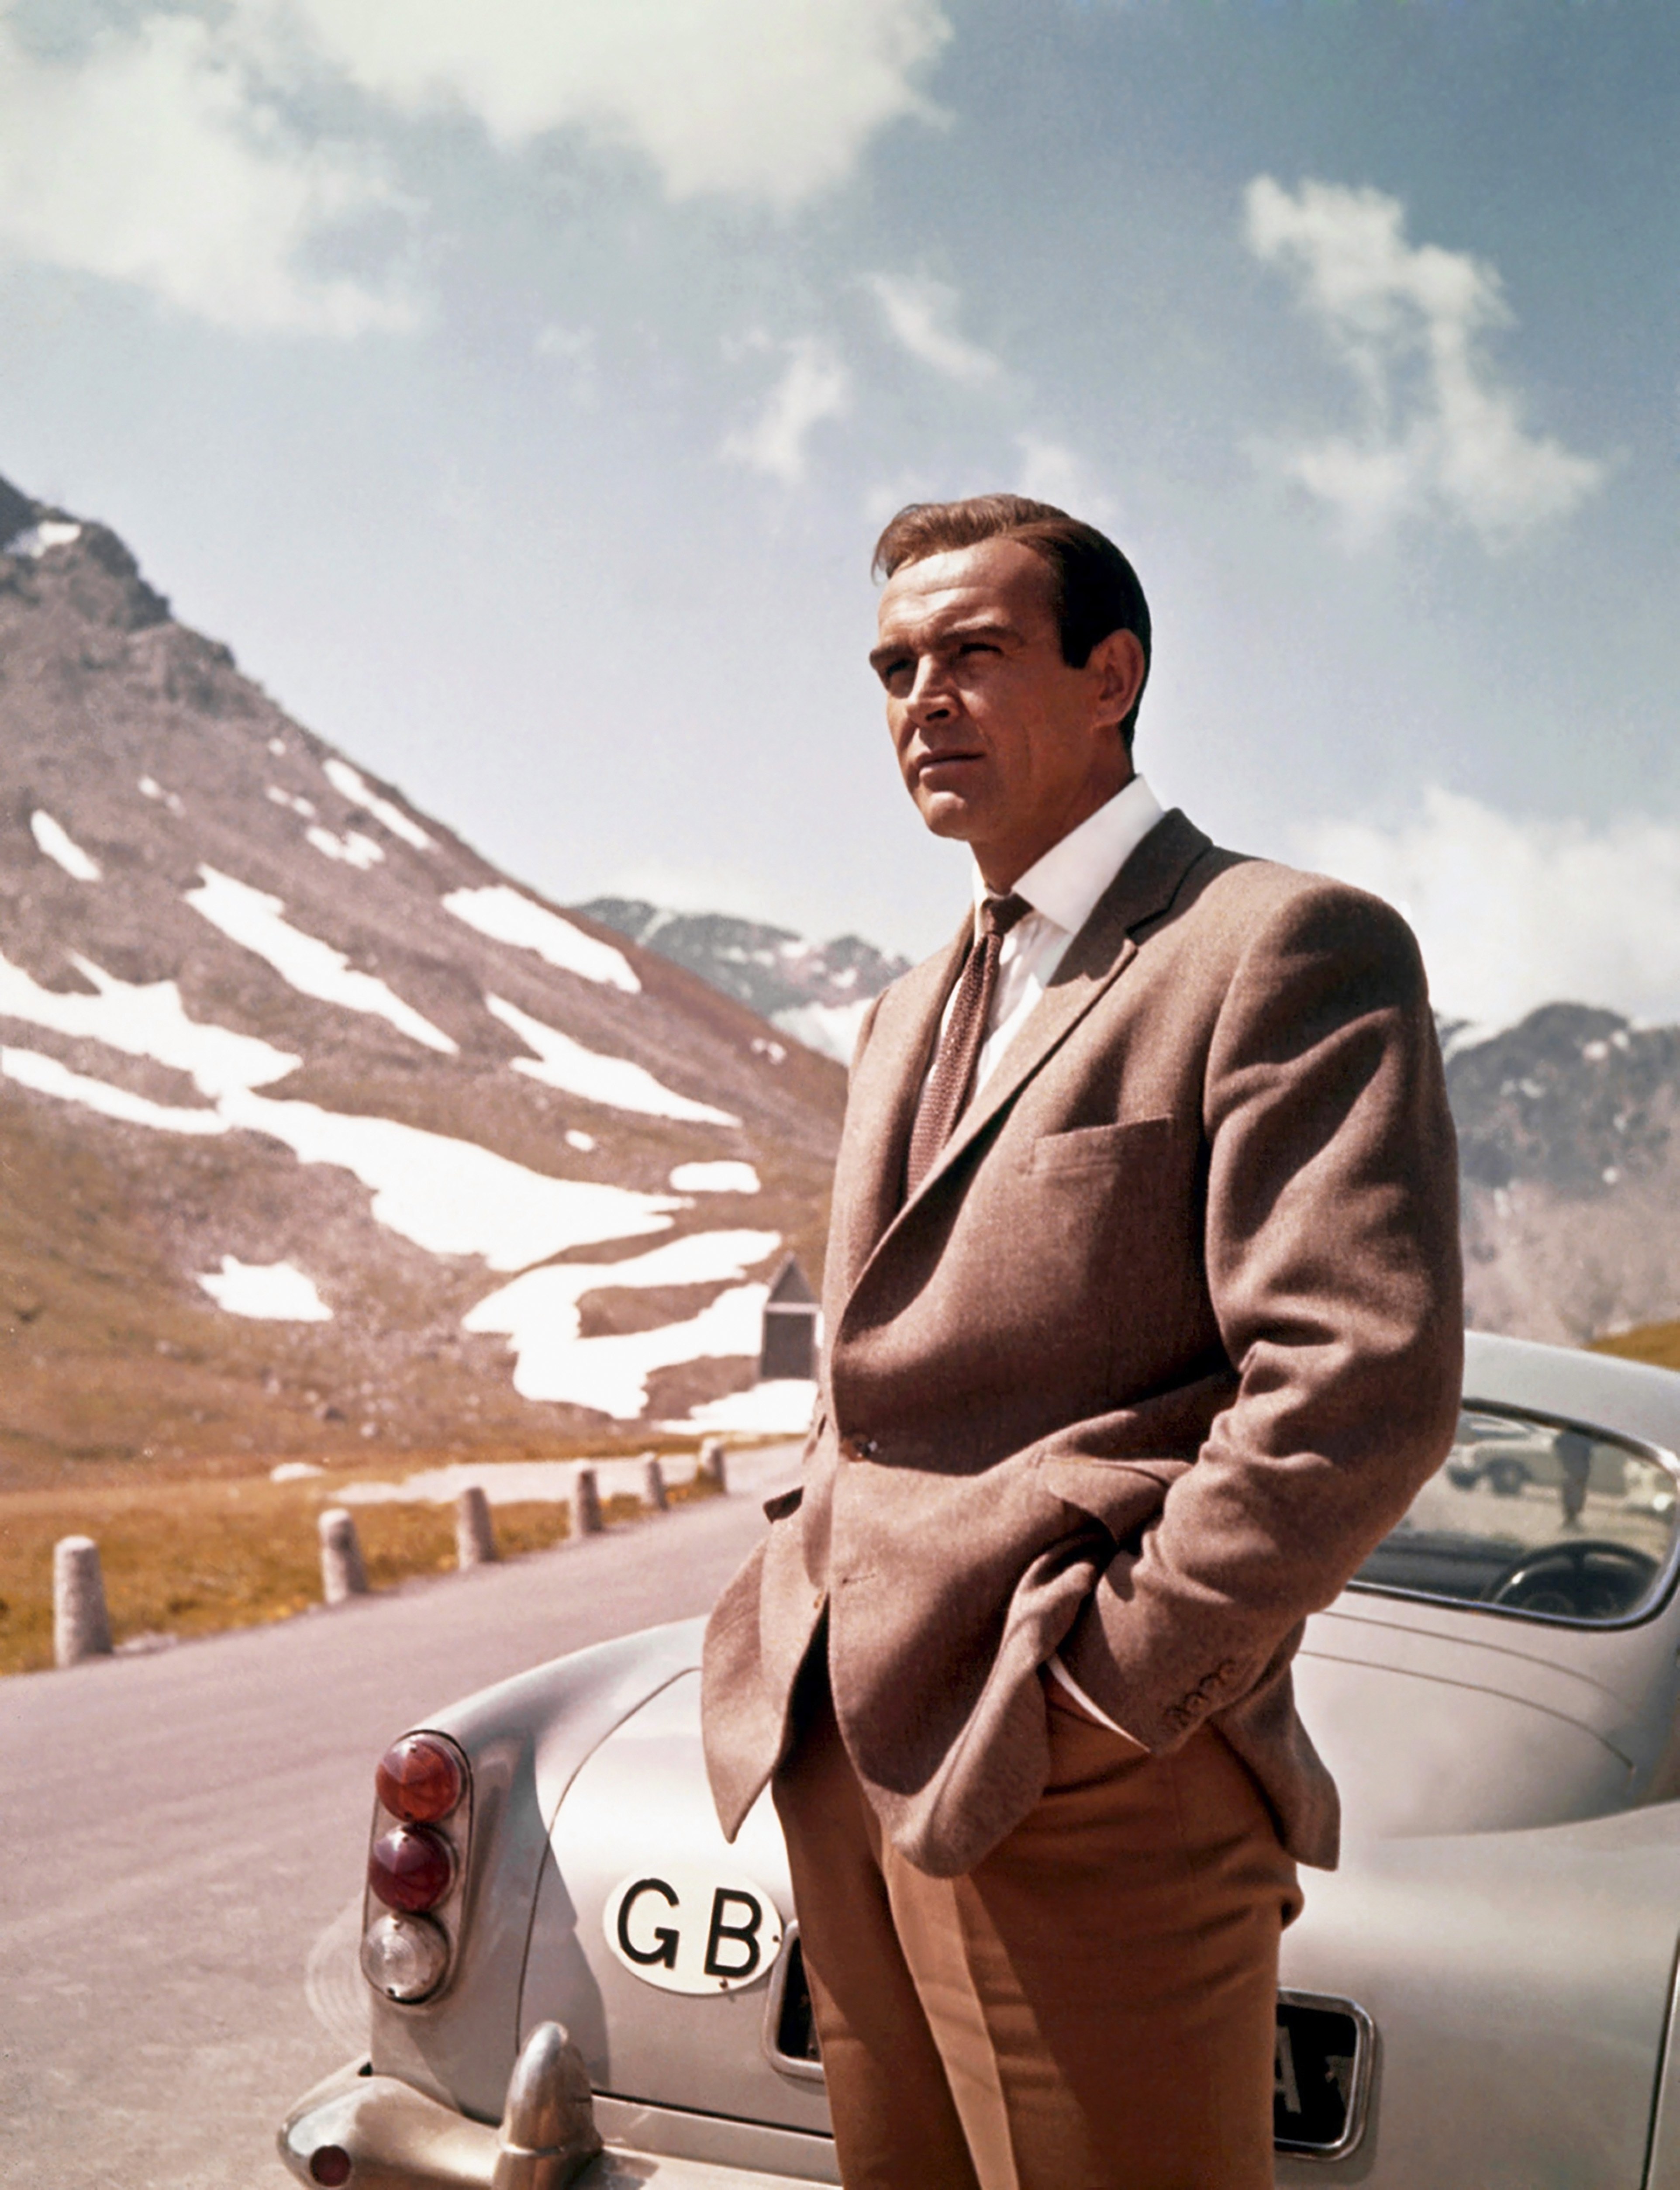 Schauspieler Sean Connery in einer Szene aus dem United Artists Film "Goldfinger" von 1964 | Quelle: Getty Images